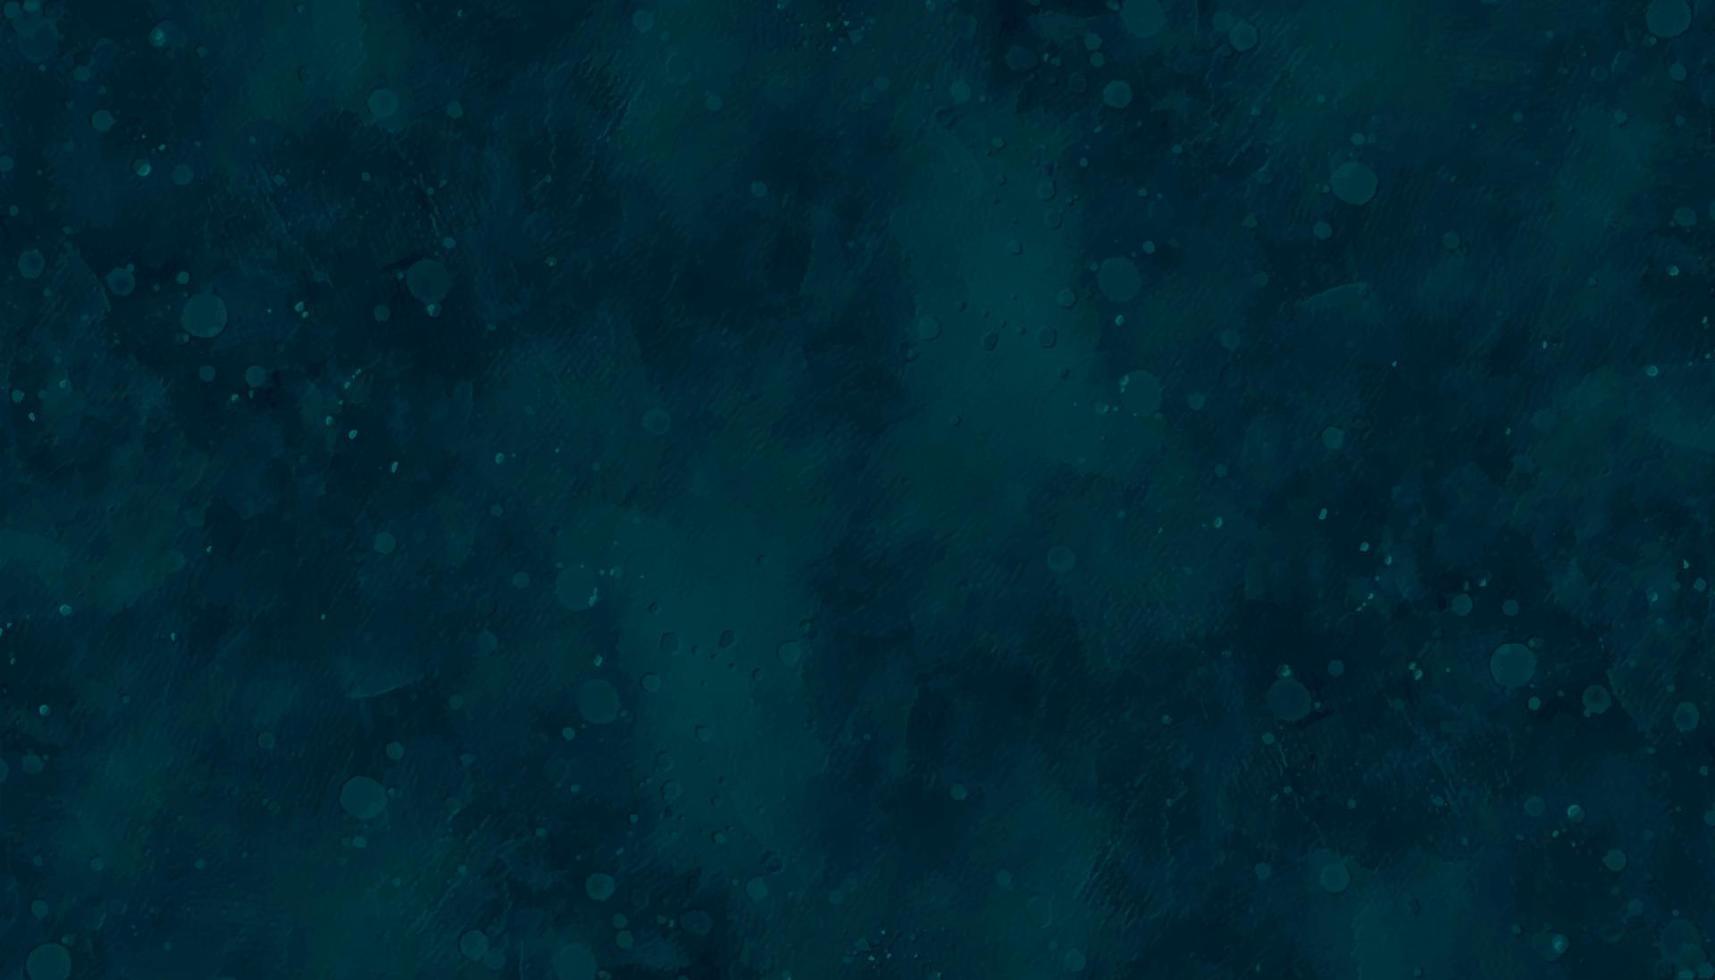 abstrakt mörk blå vattenfärg lutning måla grunge textur bakgrund. blå bakgrund textur med gammal, bedrövad årgång textur. vattenfärg målad grunge i elegant, urblekt baner design vektor